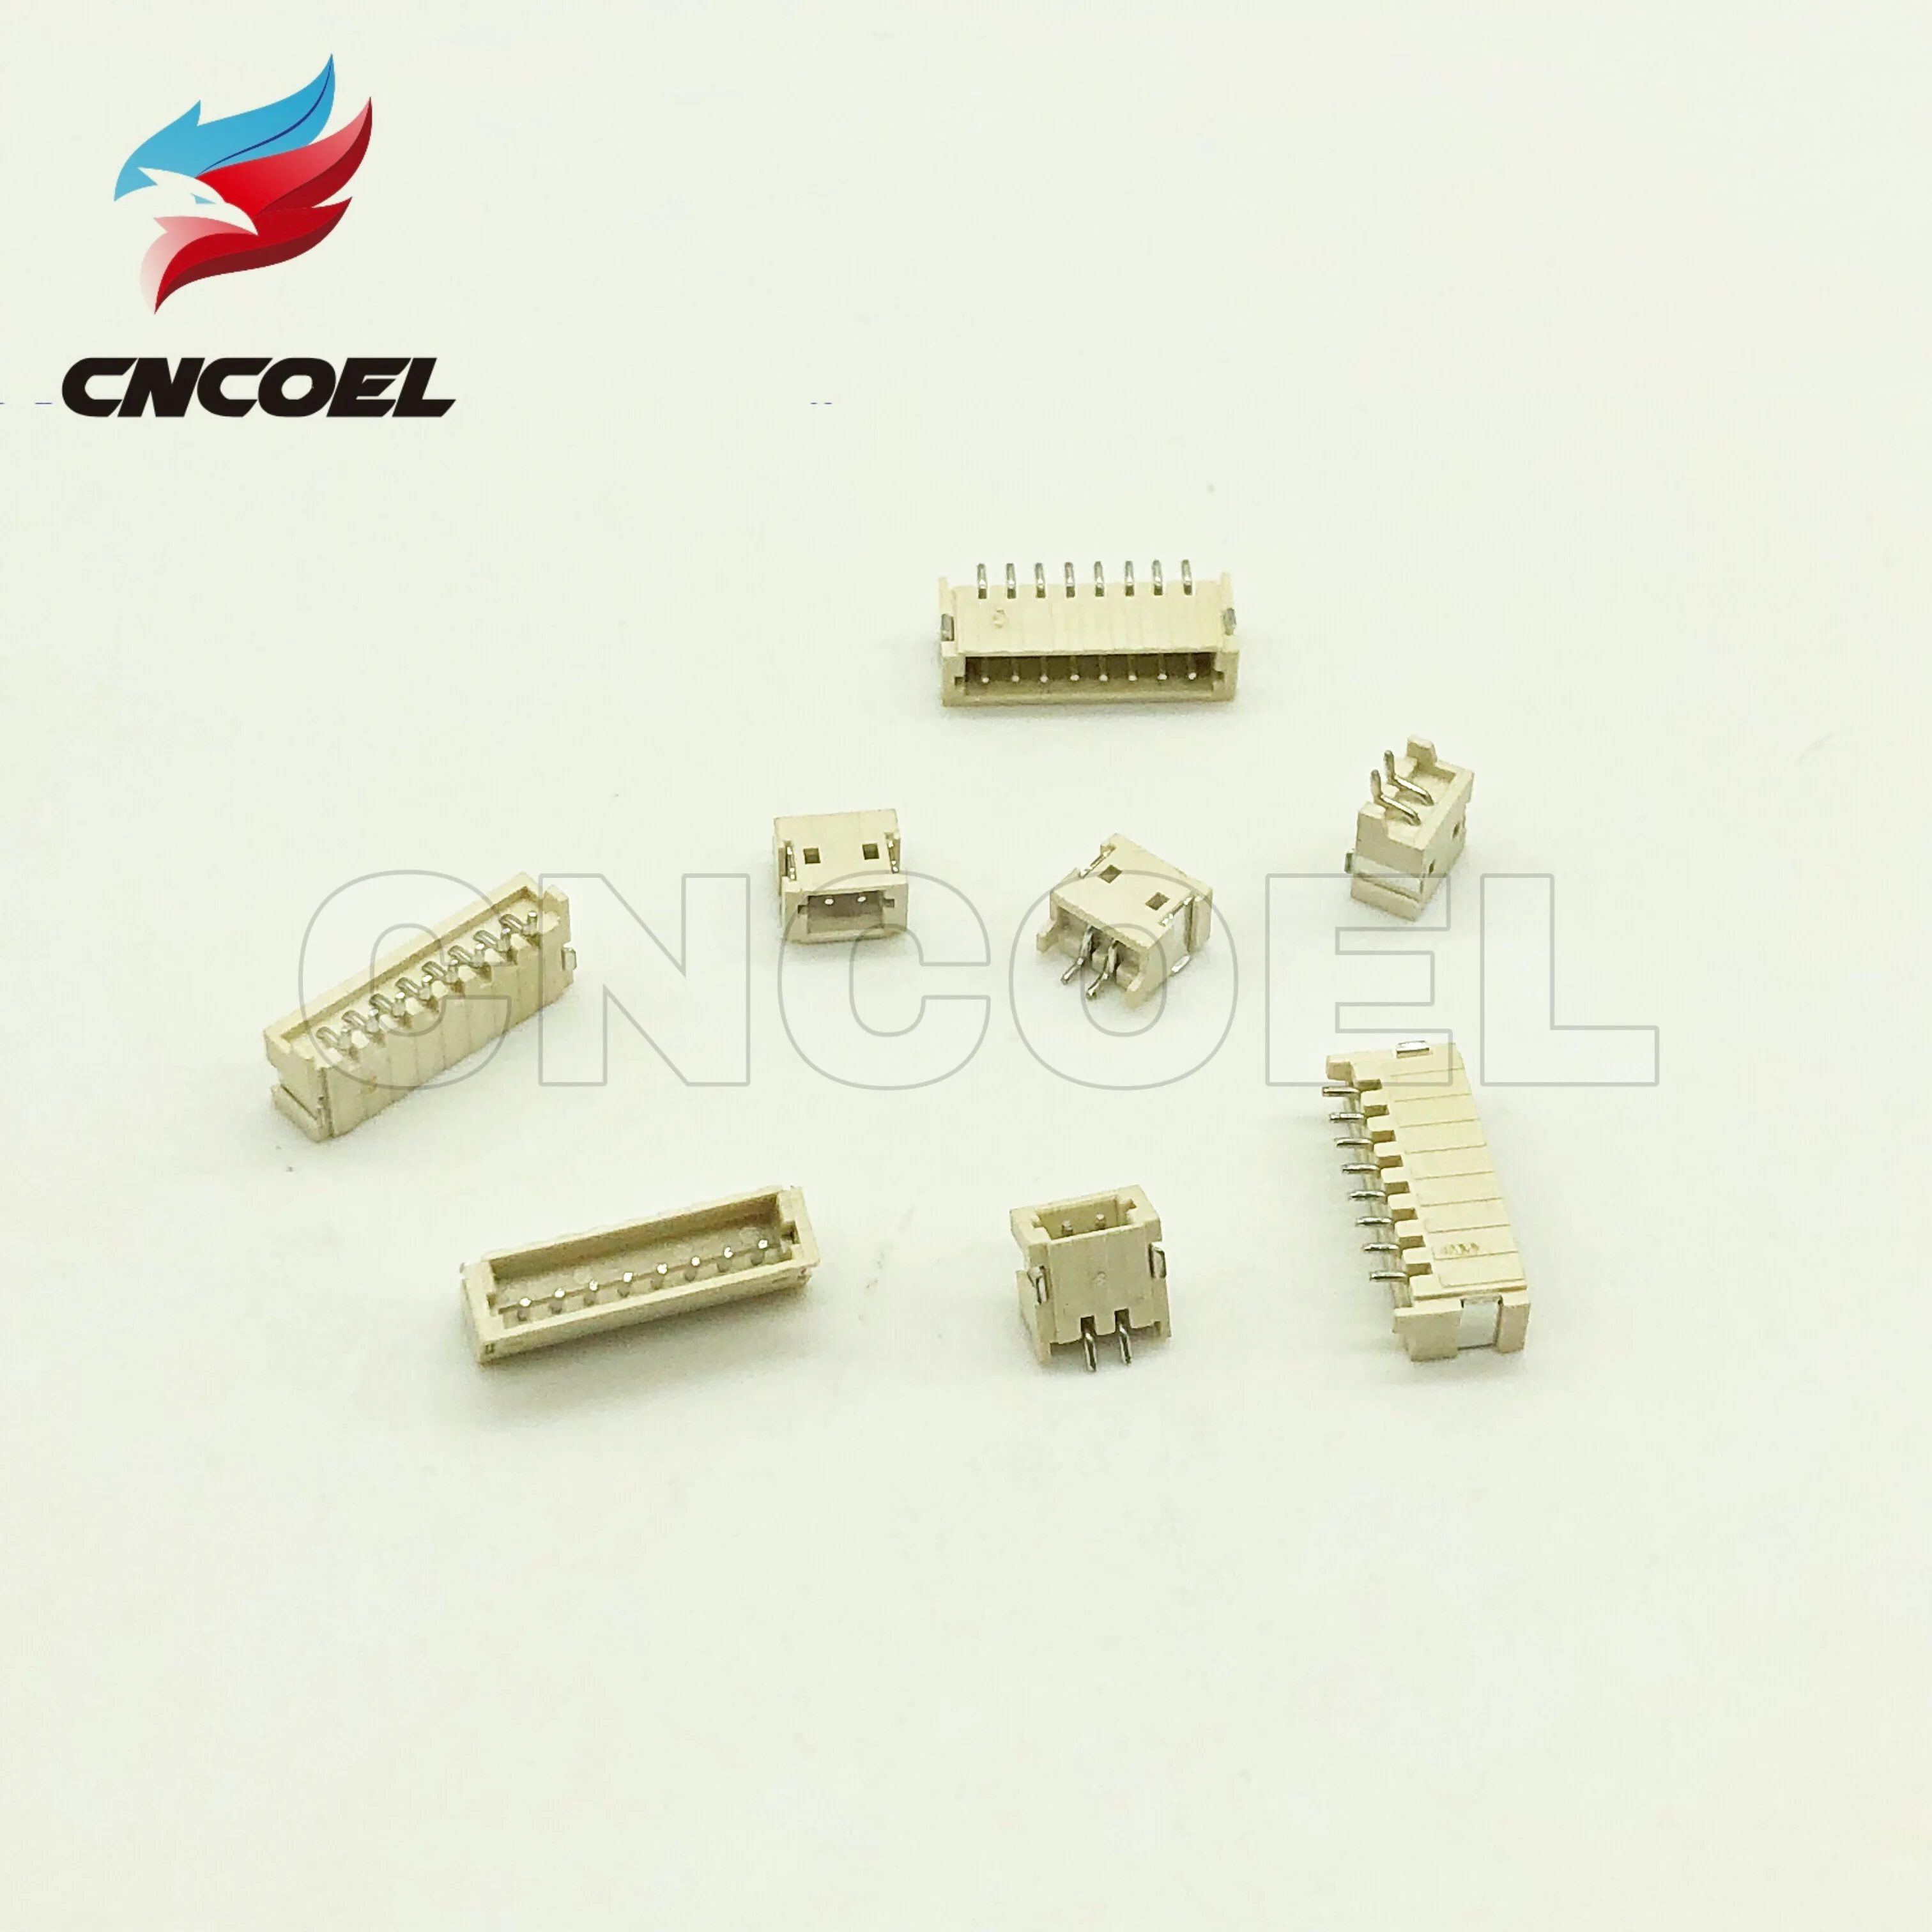 

20pcs ZH1.5 connector 2P/3P/4P/5P/6P/7P/8P/9P/10P/12P 1.5mm Horizontal smd Socket 1.5mm Pitch Patch Plug Connector SMT SMD